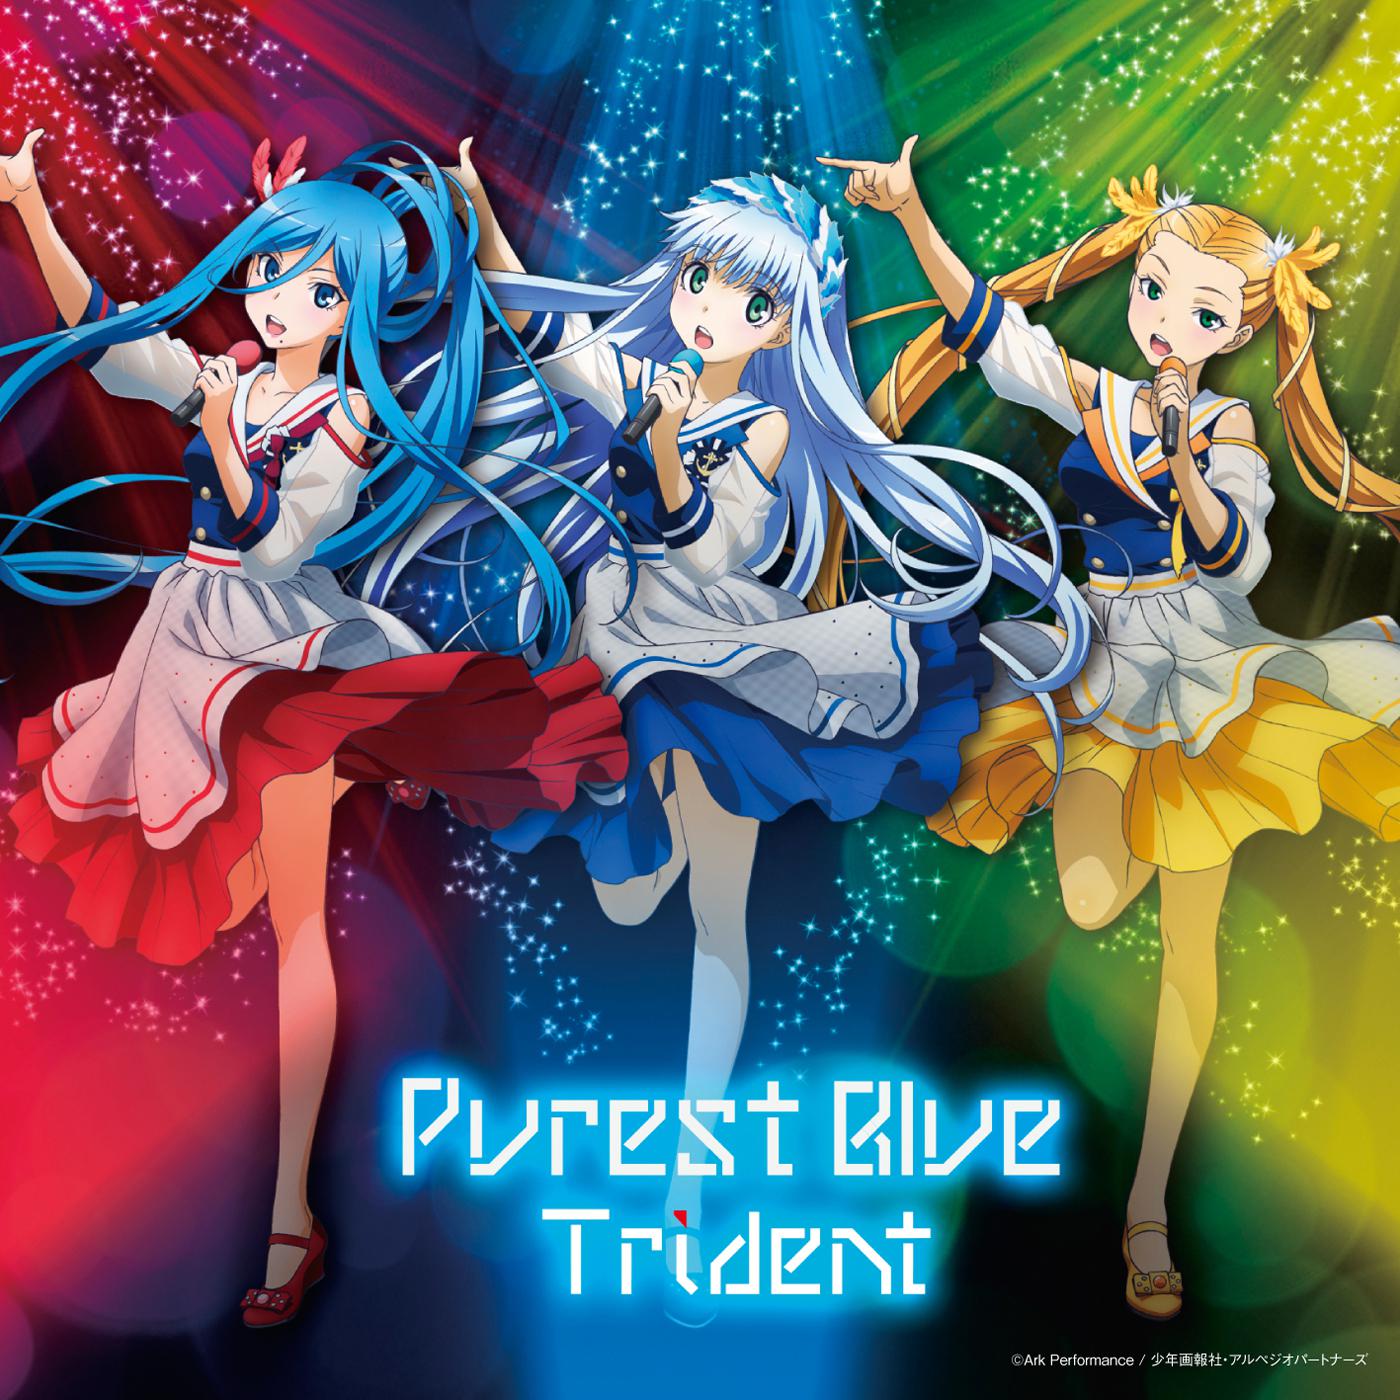 ブルー・フィールド歌词 歌手Trident-专辑Purest Blue-单曲《ブルー・フィールド》LRC歌词下载